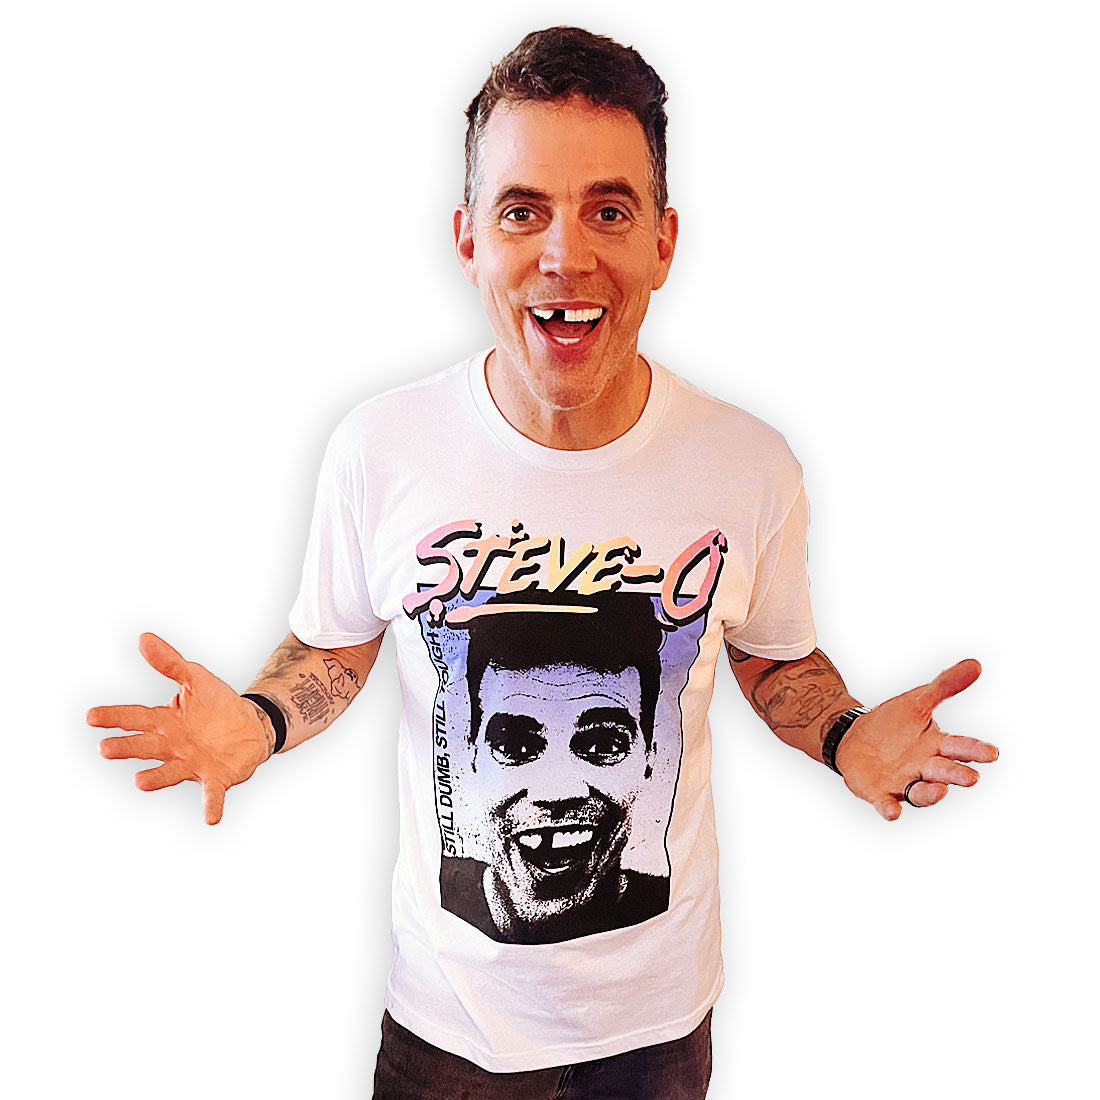 Steve-O Merchandise